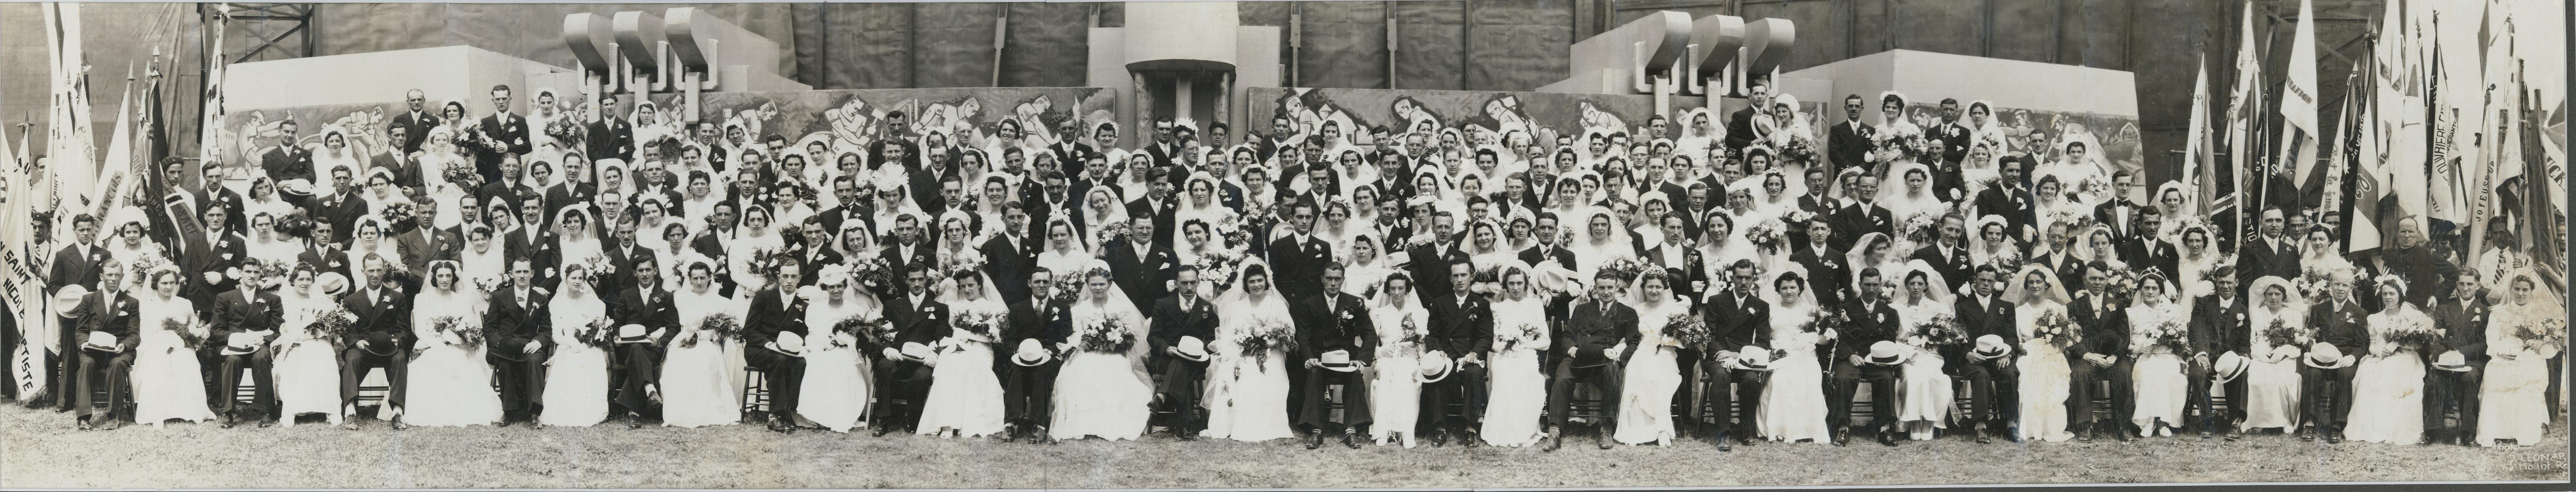 Les 105 couples qui se sont mariés au stade Delorimier, le 23 juillet 1939